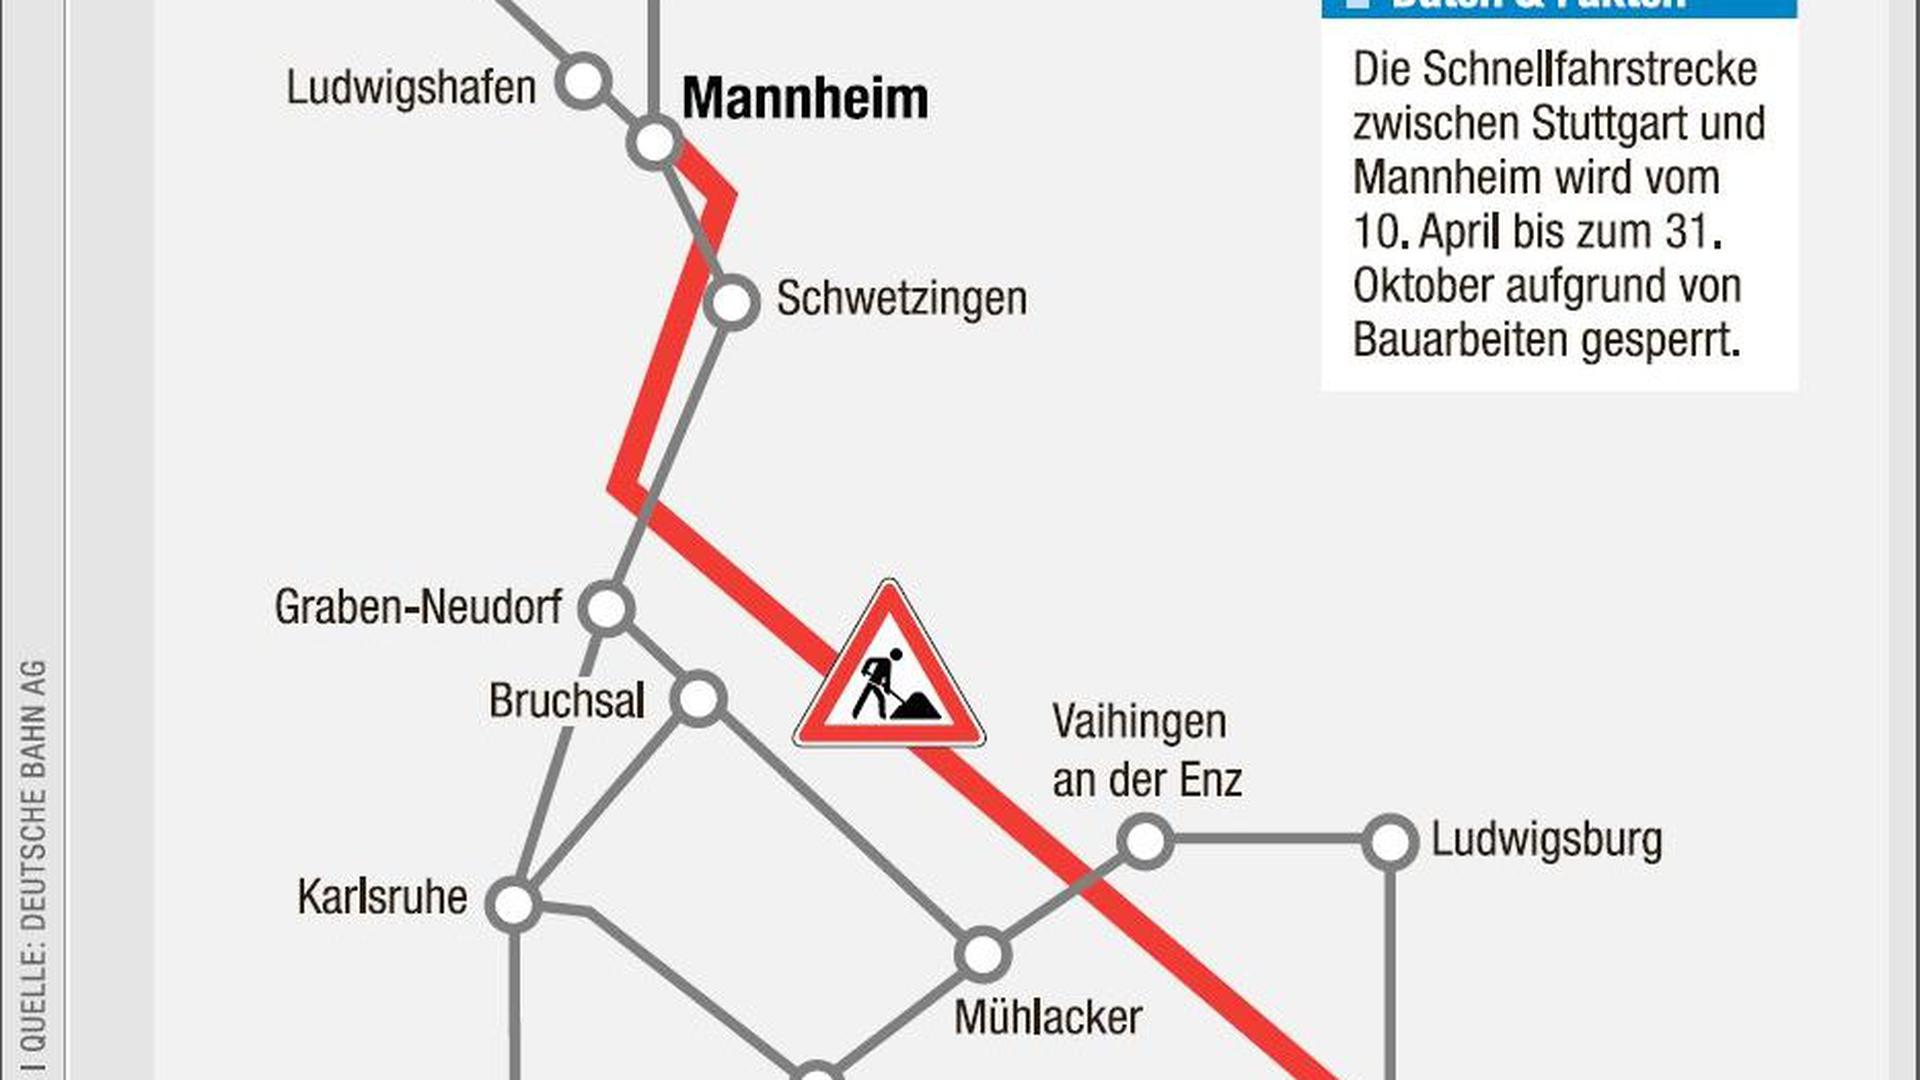 Mannheim und Stuttgart – auf dieser Strecke sind in normalen Zeiten 60.000 Pendler täglich unterwegs. Nun wird bis Ende Oktober voll gesperrt.